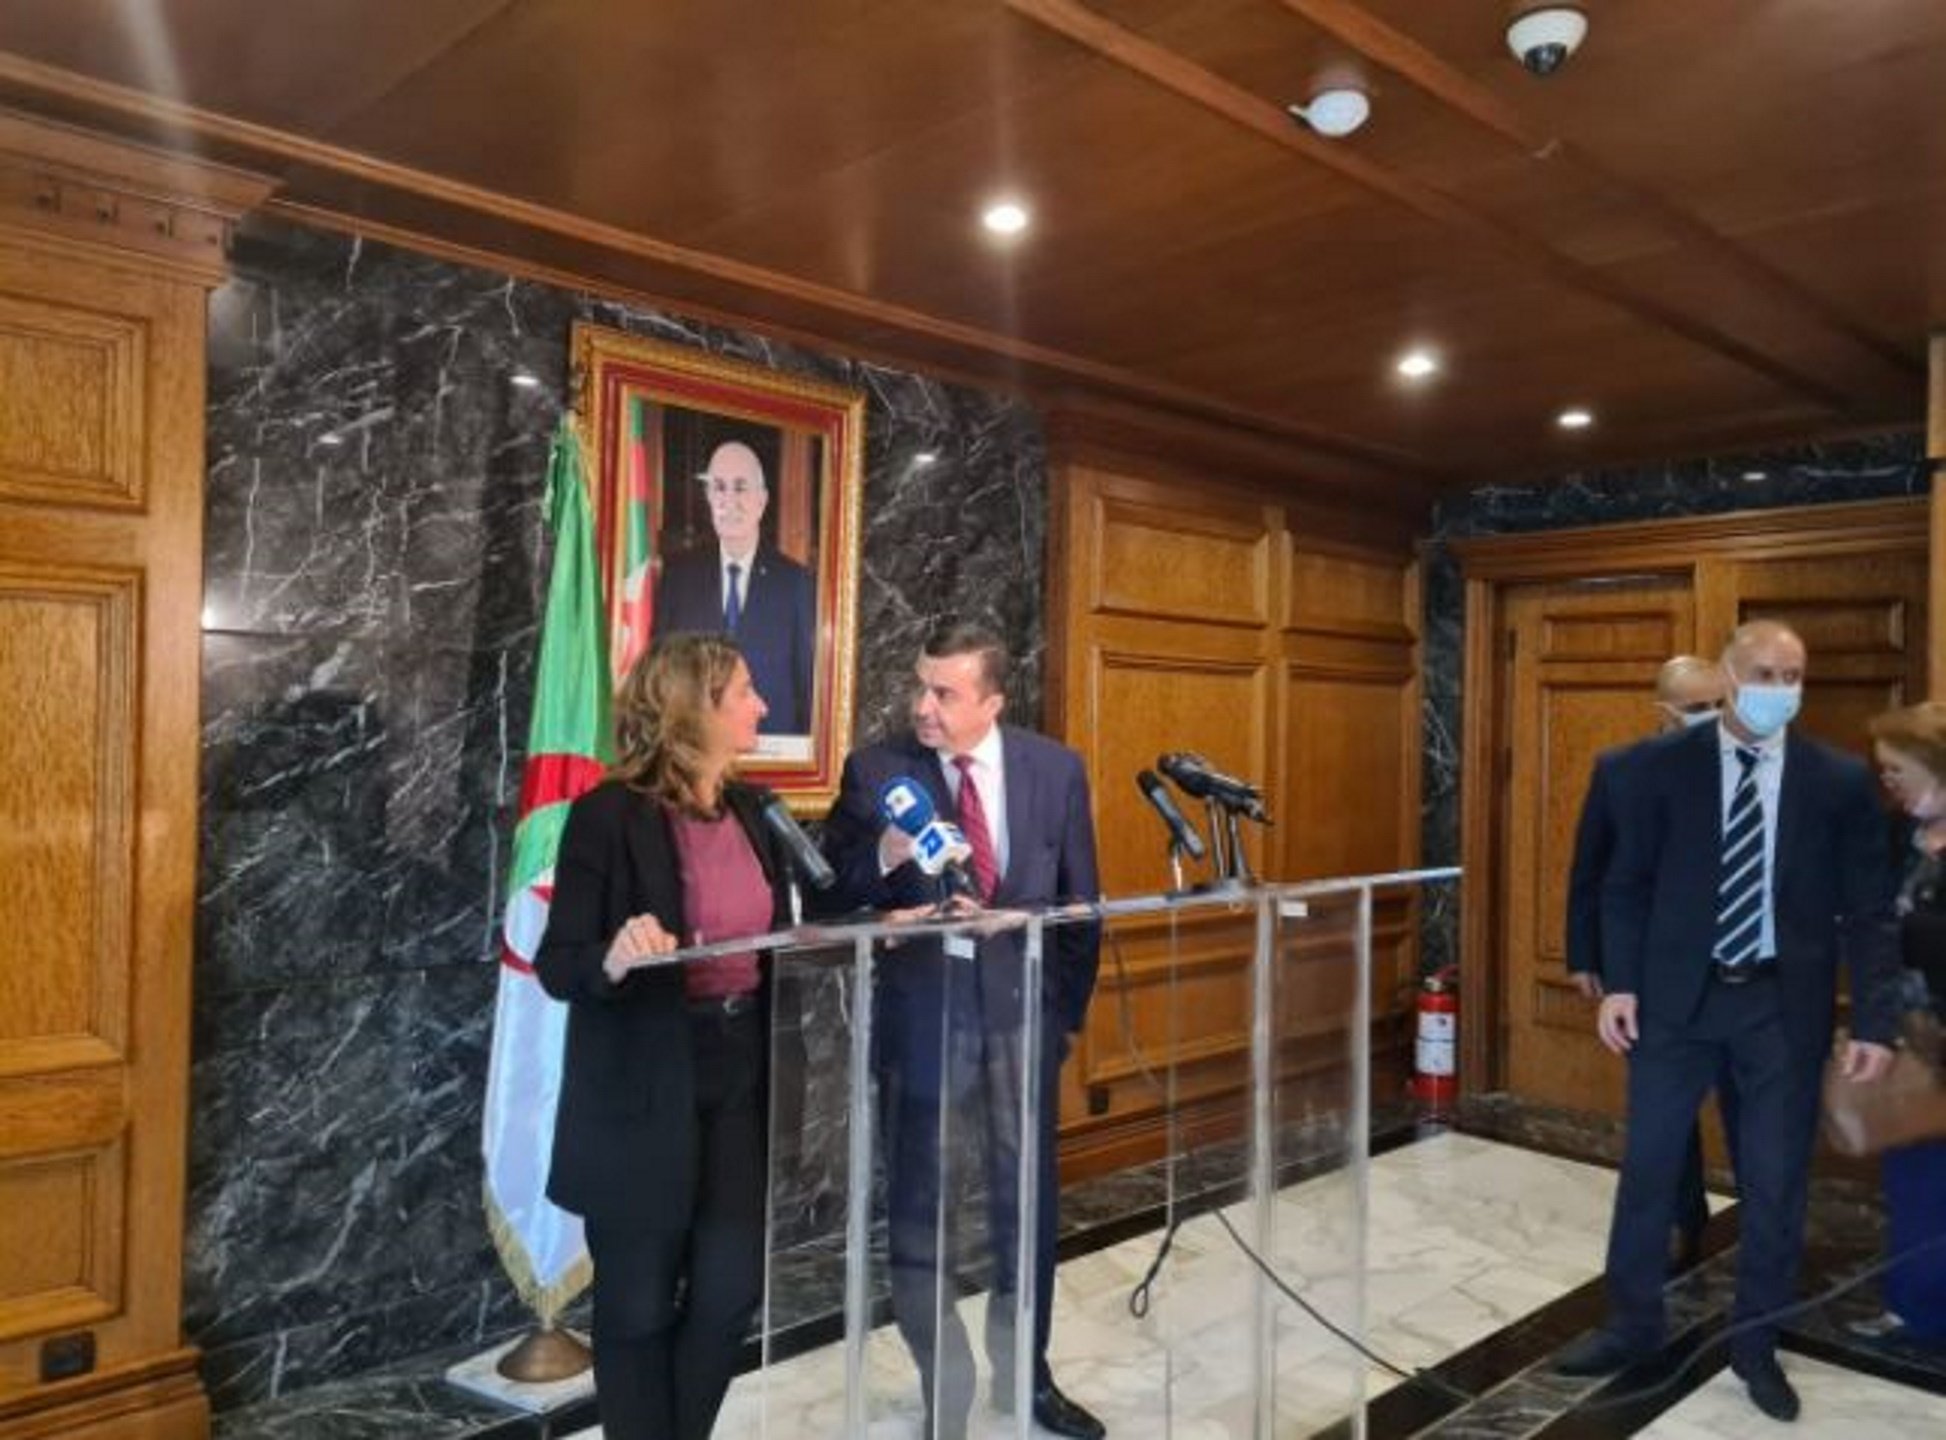 Algèria garanteix el subministrament de gas a Espanya, segons la ministra Ribera